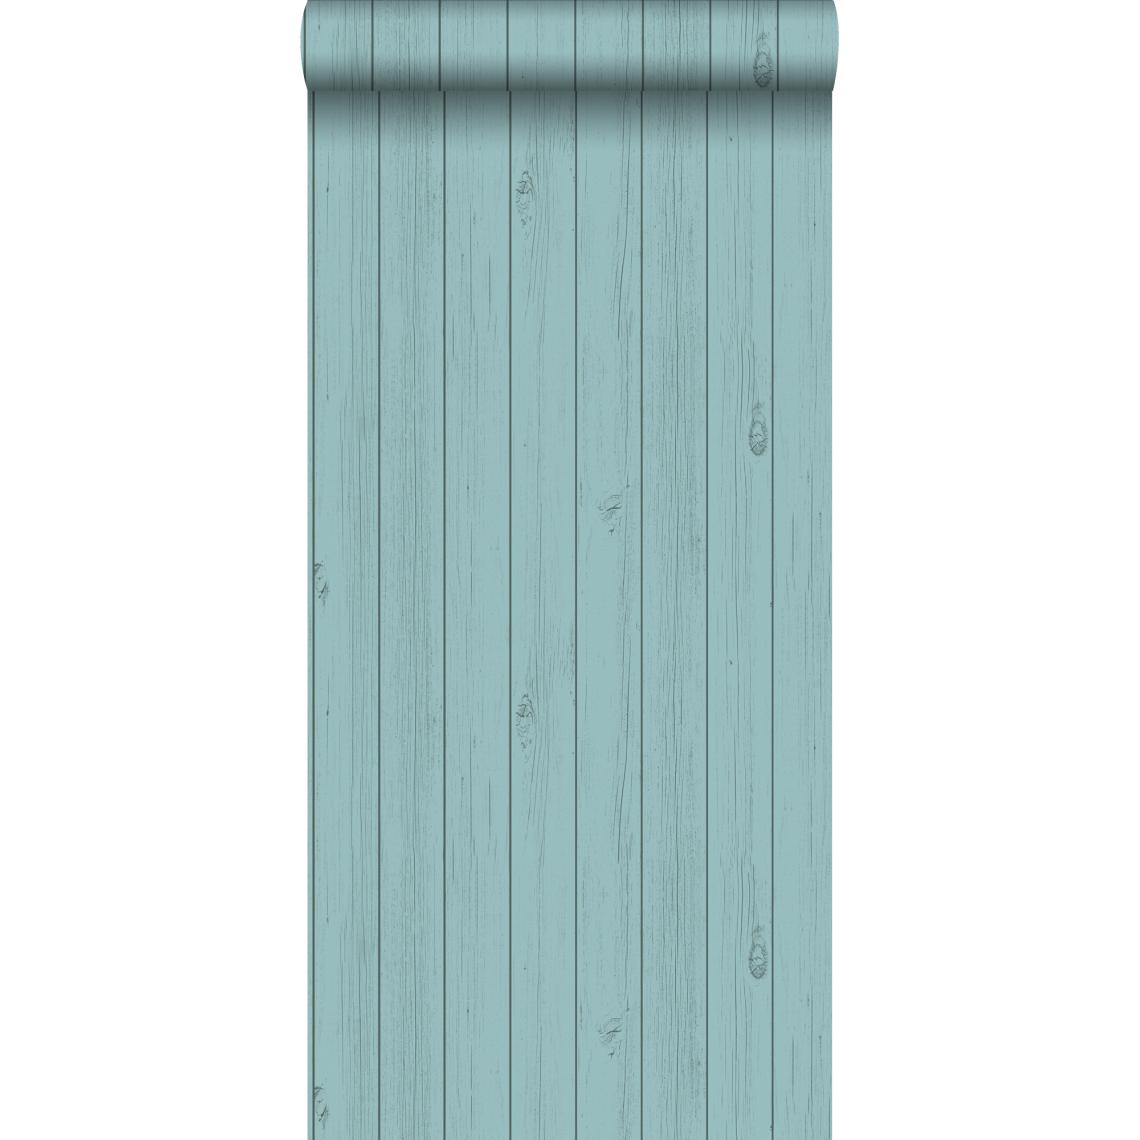 ESTAhome - ESTAhome papier peint imitation bois vert turquoise de la mer grisé - 128855 - 53 cm x 10,05 m - Papier peint